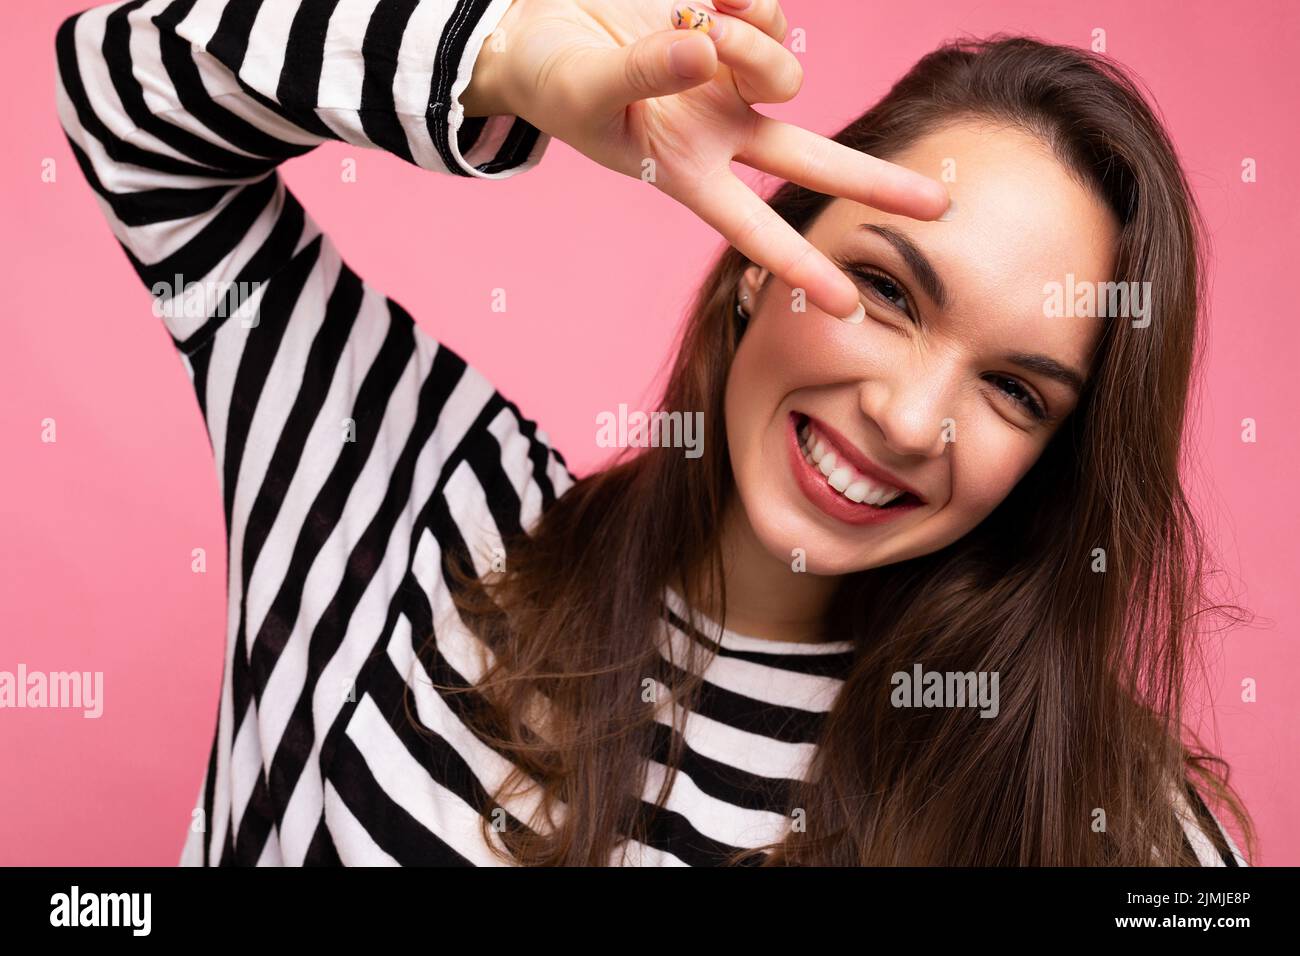 Nahaufnahme Foto von jungen europäischen positiv lächelnd Winsome glücklich schöne Brünette Frau mit aufrichtigen Emotionen tragen Casual st Stockfoto